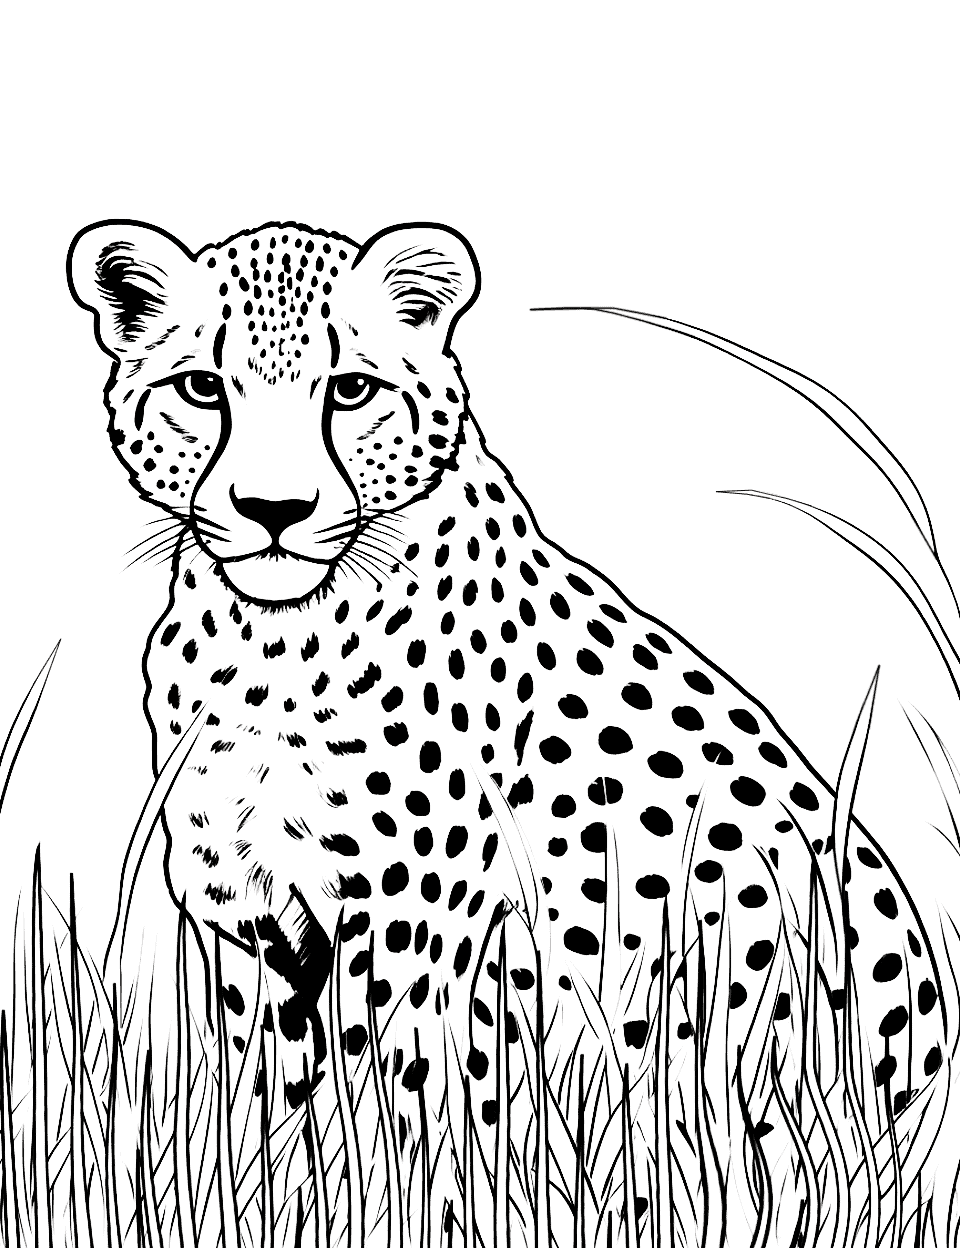 Cheetah coloring pages free printable sheets